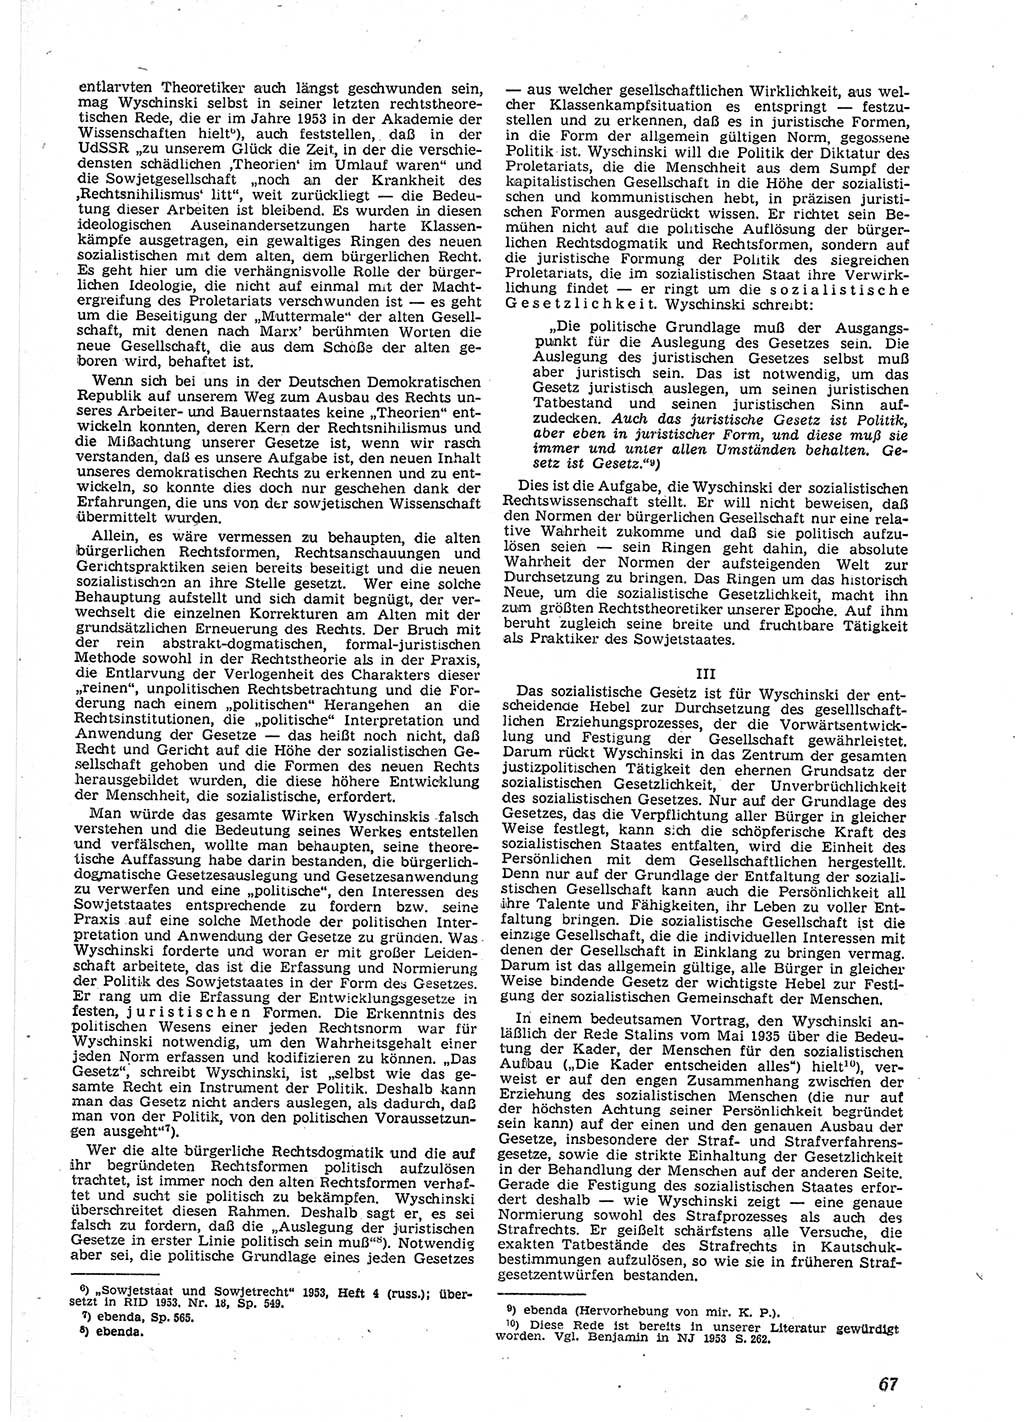 Neue Justiz (NJ), Zeitschrift für Recht und Rechtswissenschaft [Deutsche Demokratische Republik (DDR)], 9. Jahrgang 1955, Seite 67 (NJ DDR 1955, S. 67)